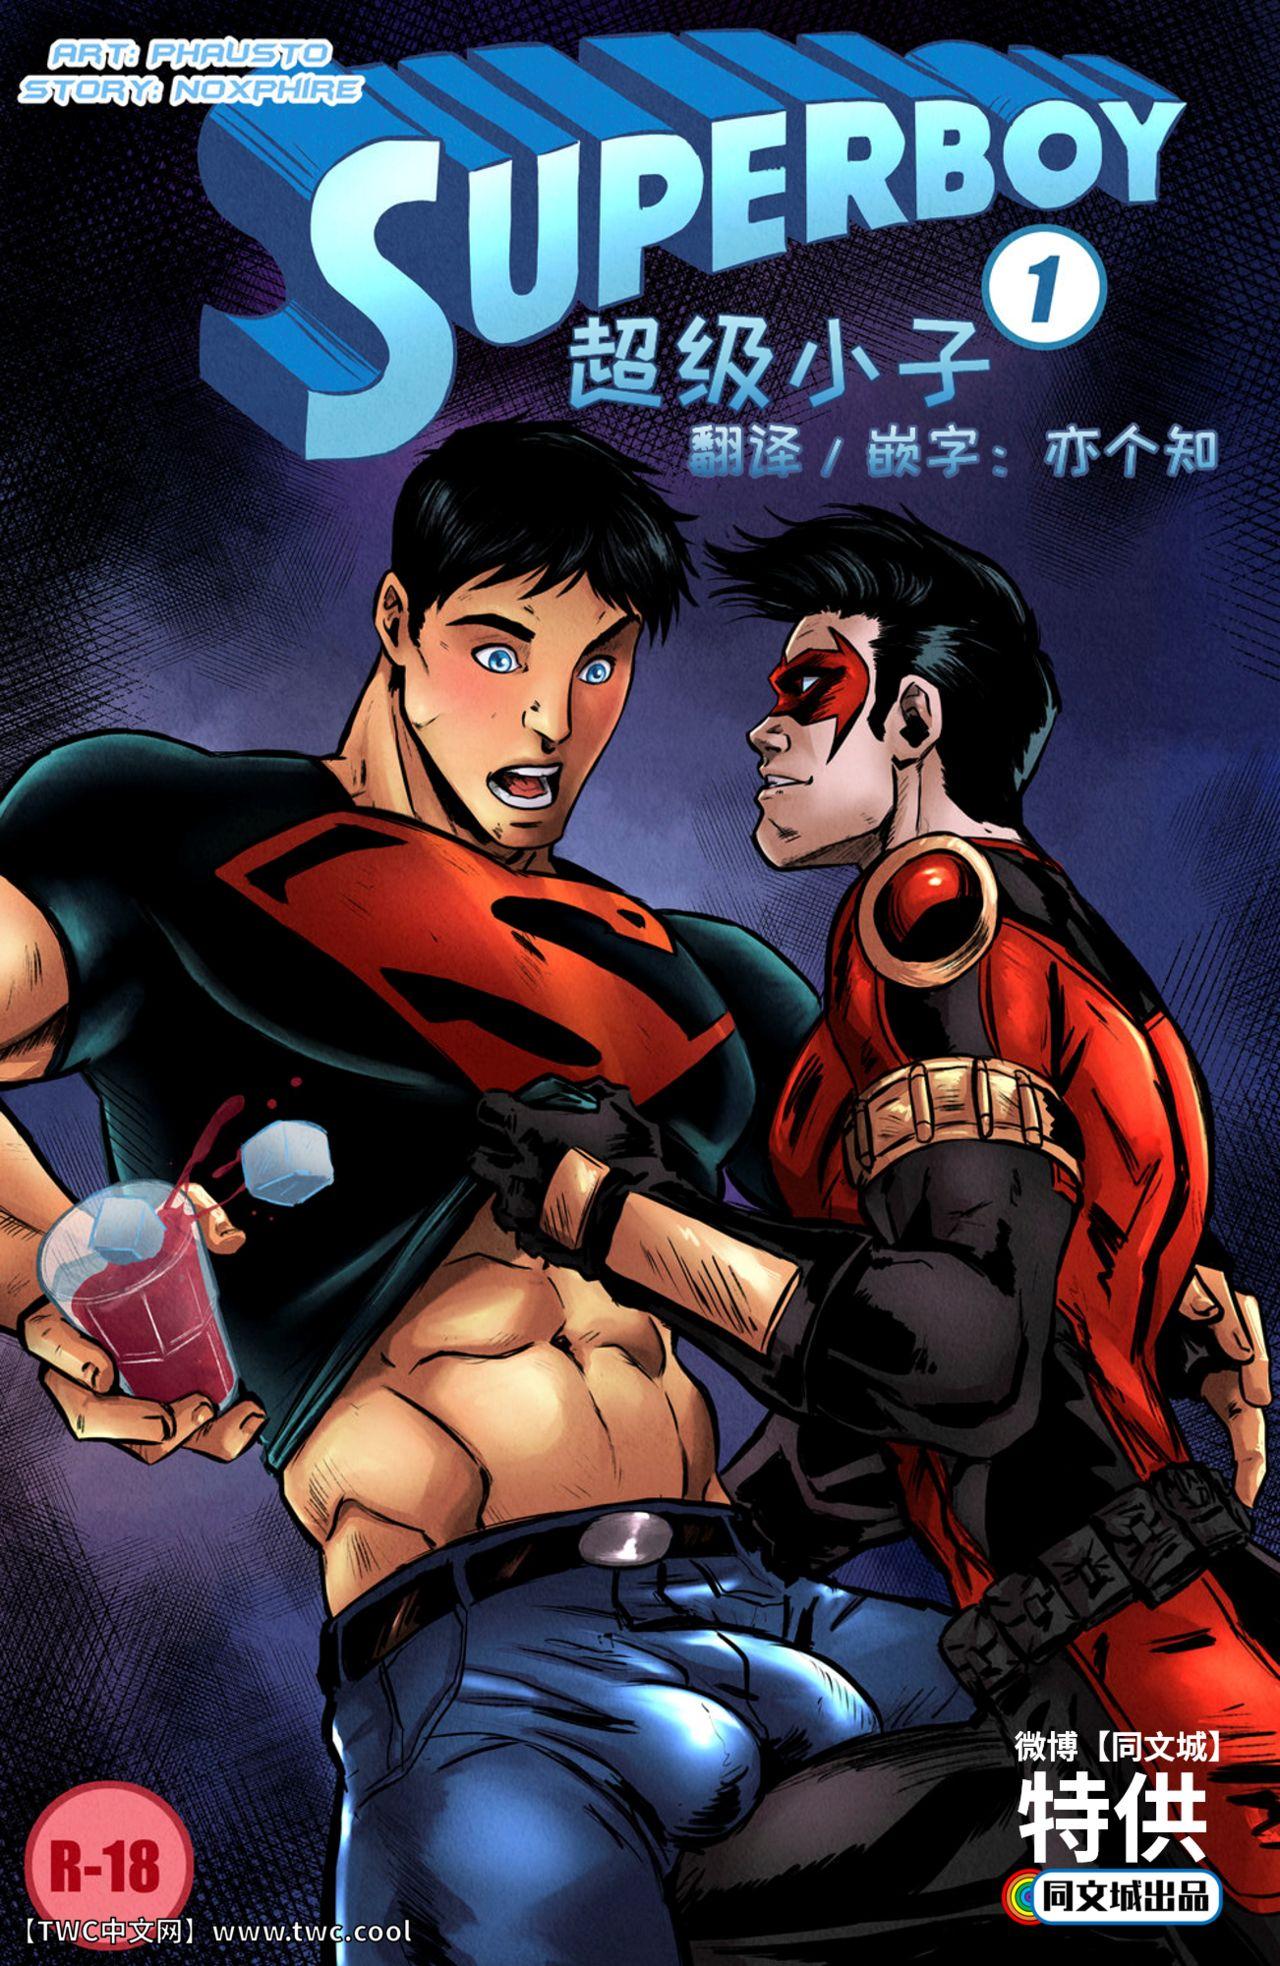 Superboy 0